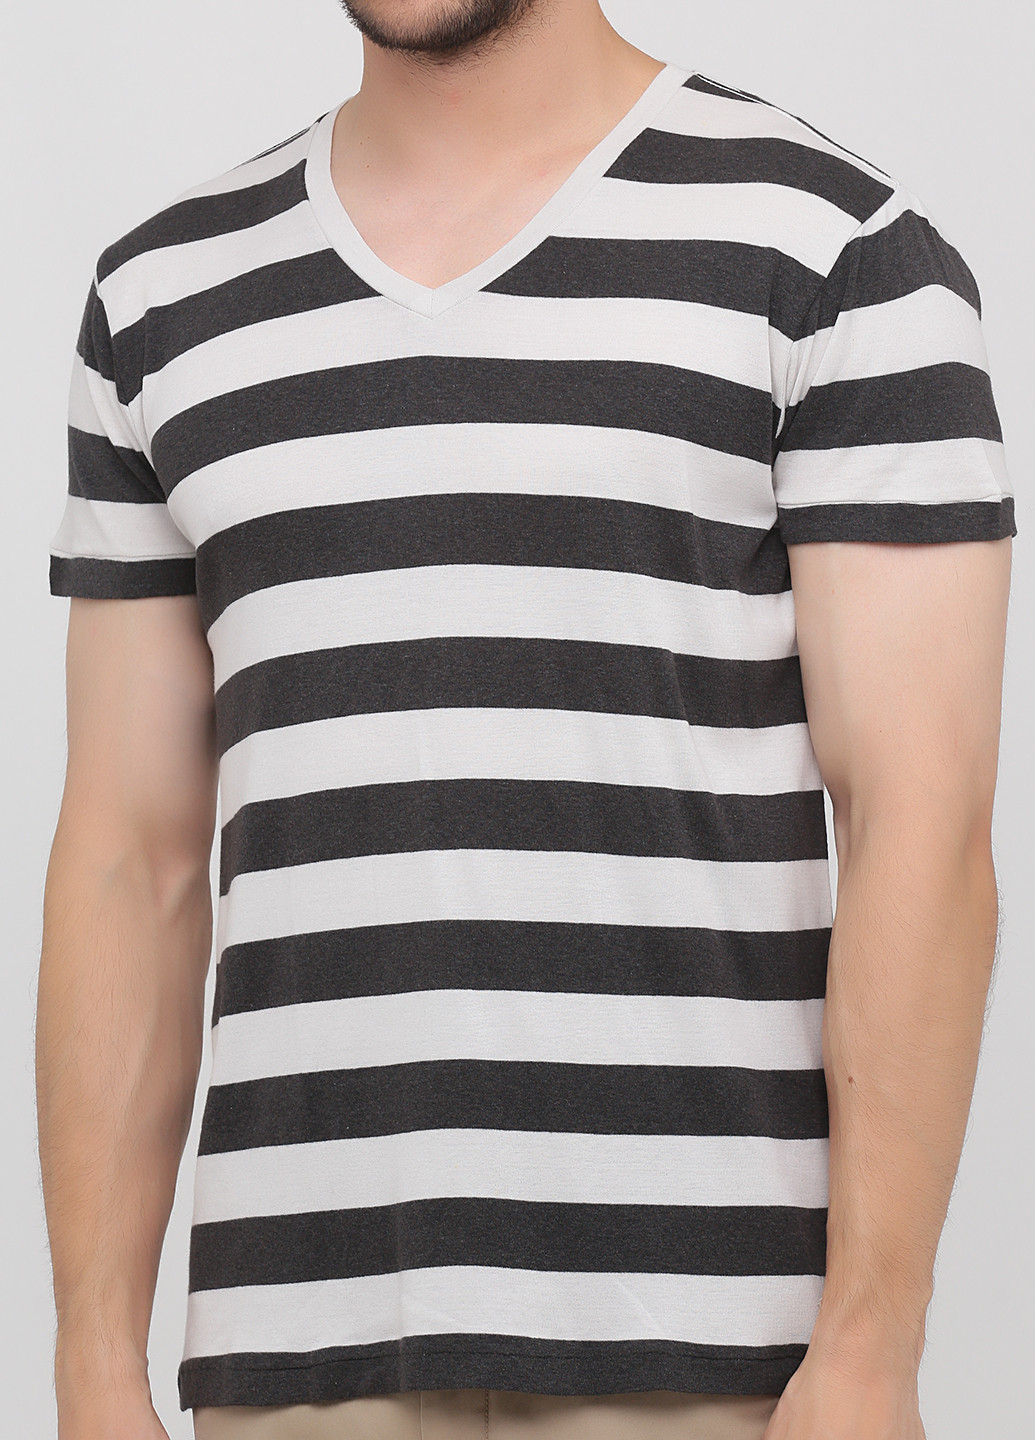 Черно-белая футболка Ralph Lauren